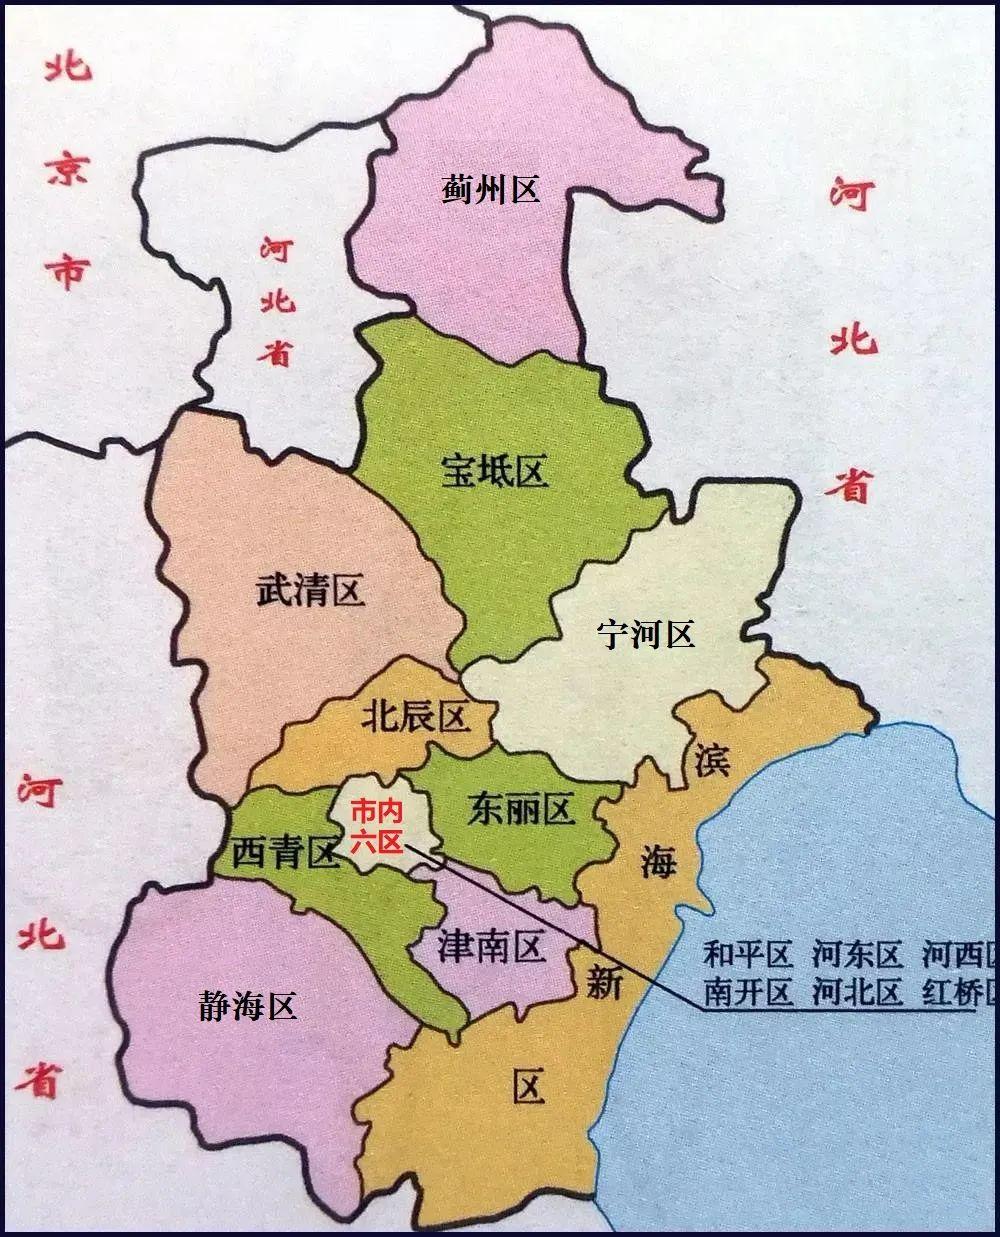 天津市优质区域介绍之和平区,主要是教育和配套房产